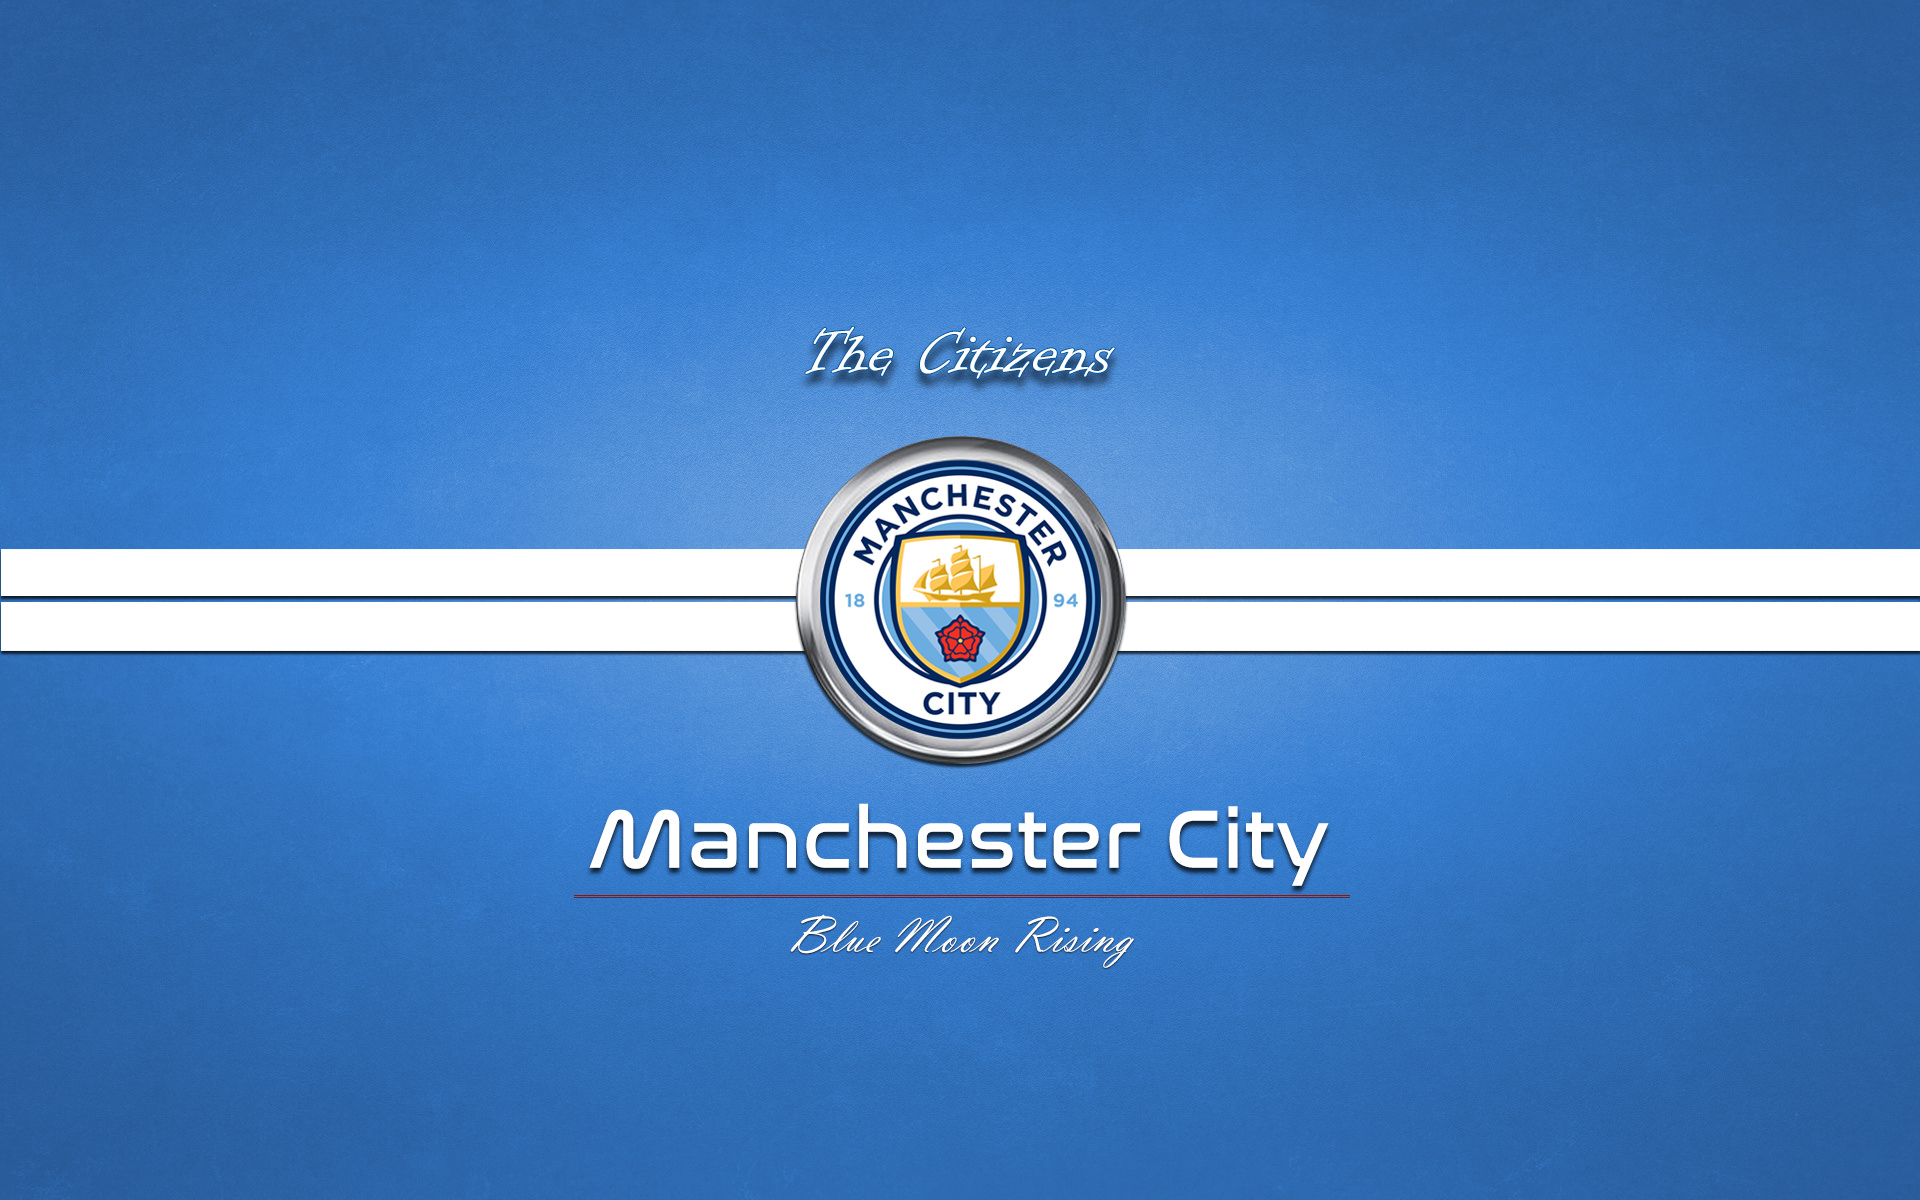 Manchester City - HD Wallpaper 